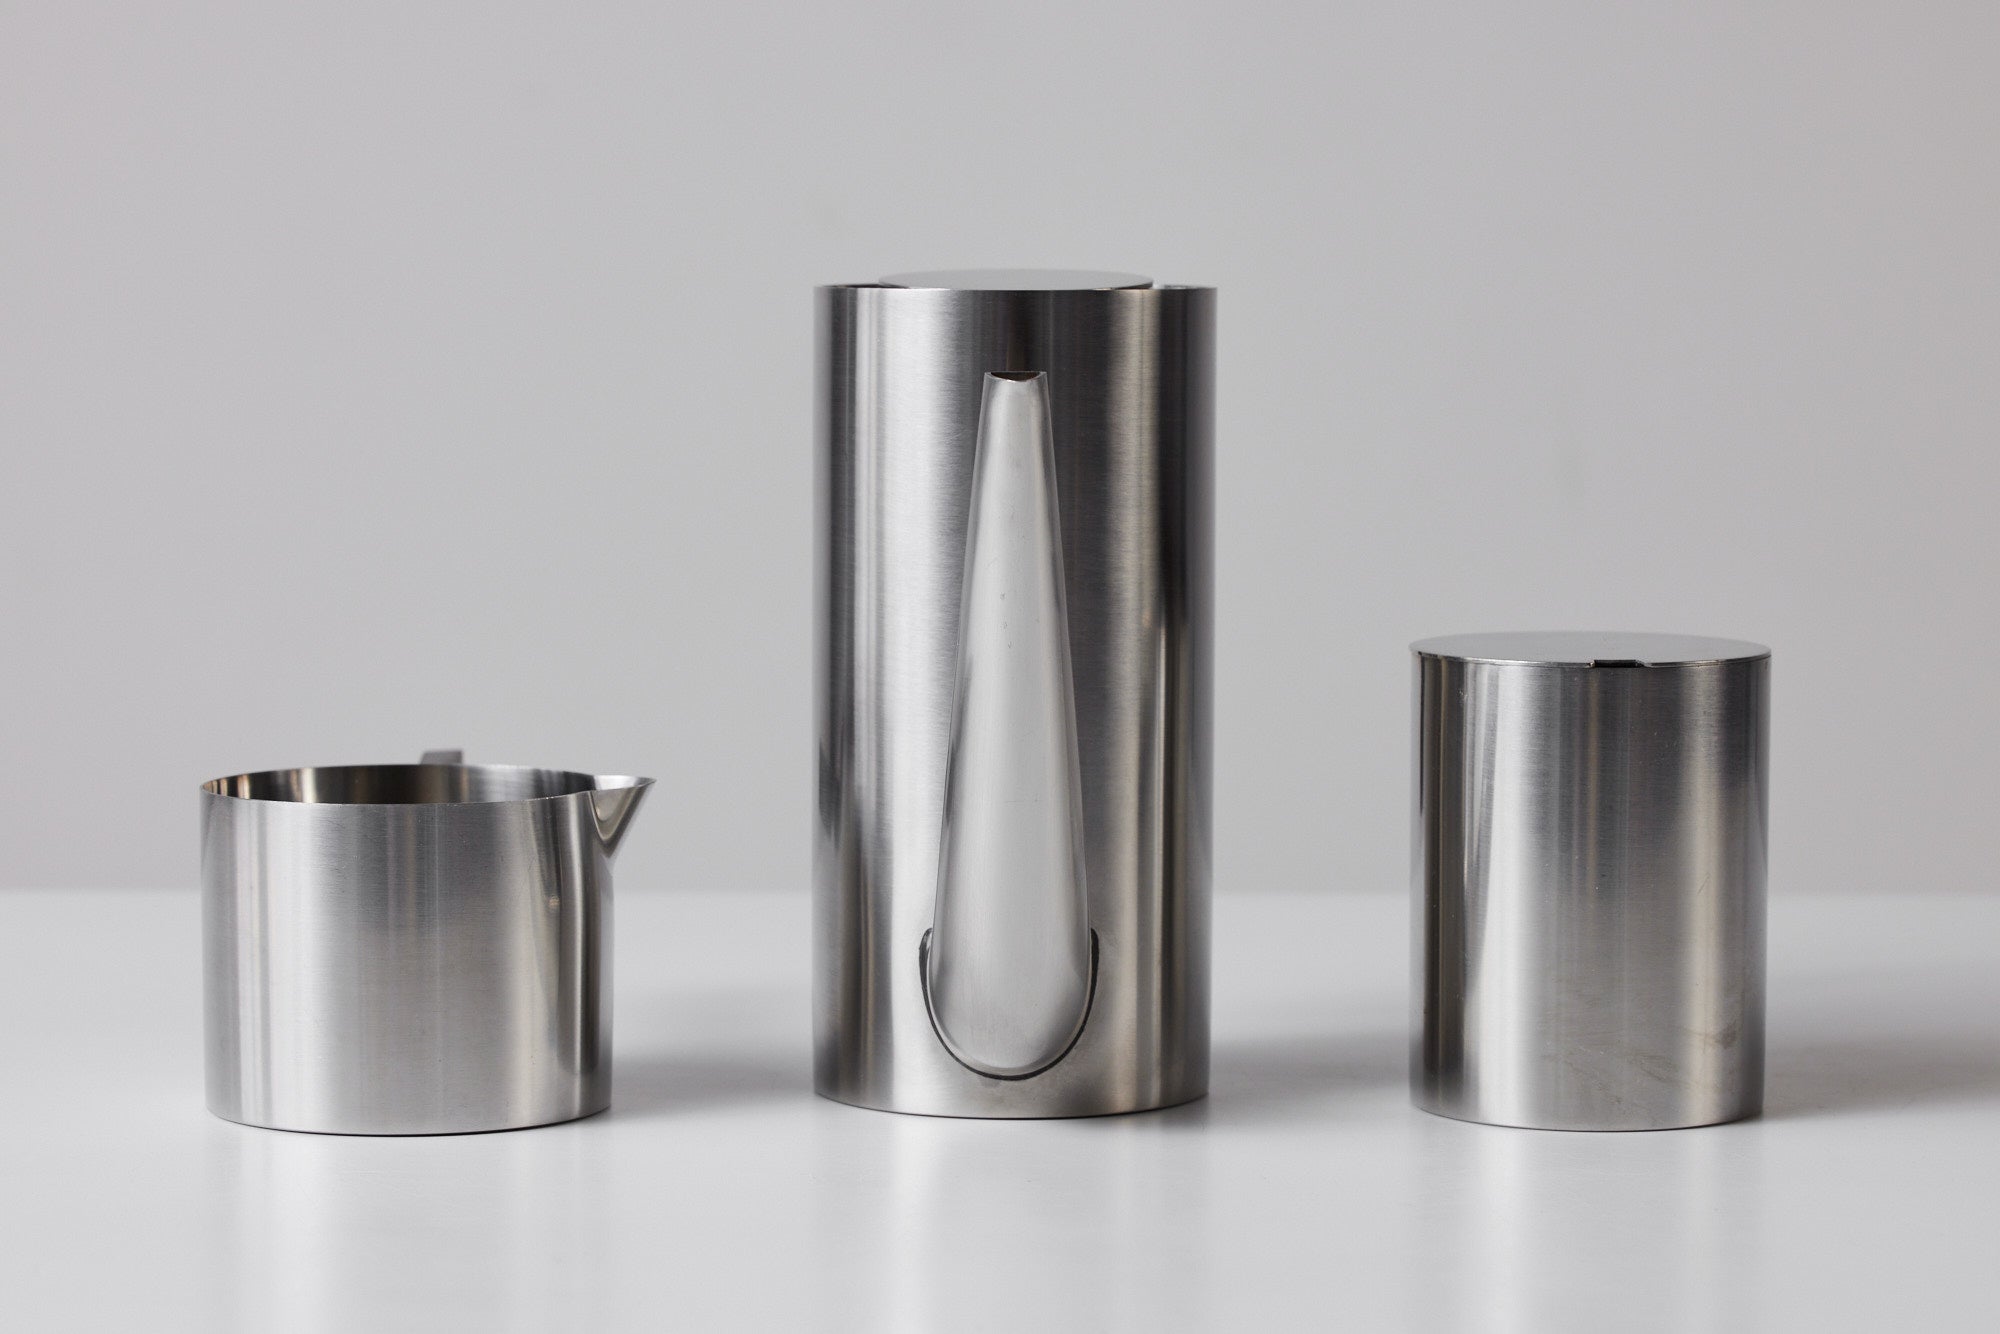 Arne Jacobsen Stainless Steel Danish Tea Set for Stelton